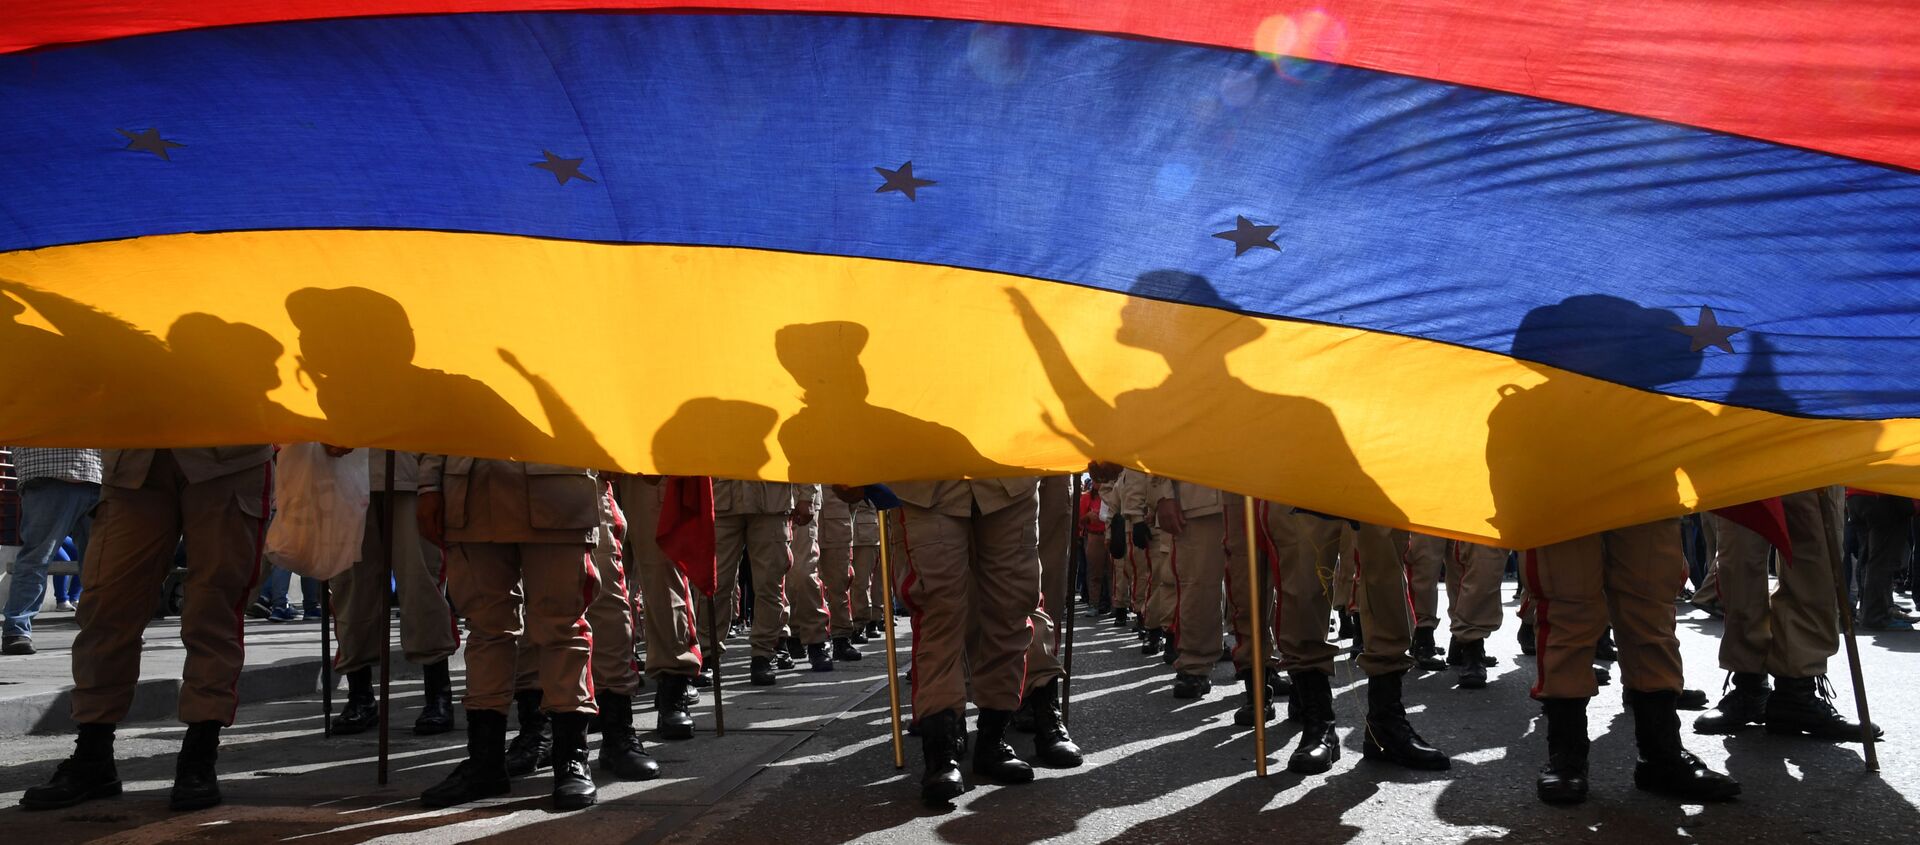 Miembros de la milicia bolivariana asisten a una marcha en apoyo al presidente venezolano Nicolás Maduro. Caracas, 14 de enero de 2020 - Sputnik Mundo, 1920, 27.11.2020